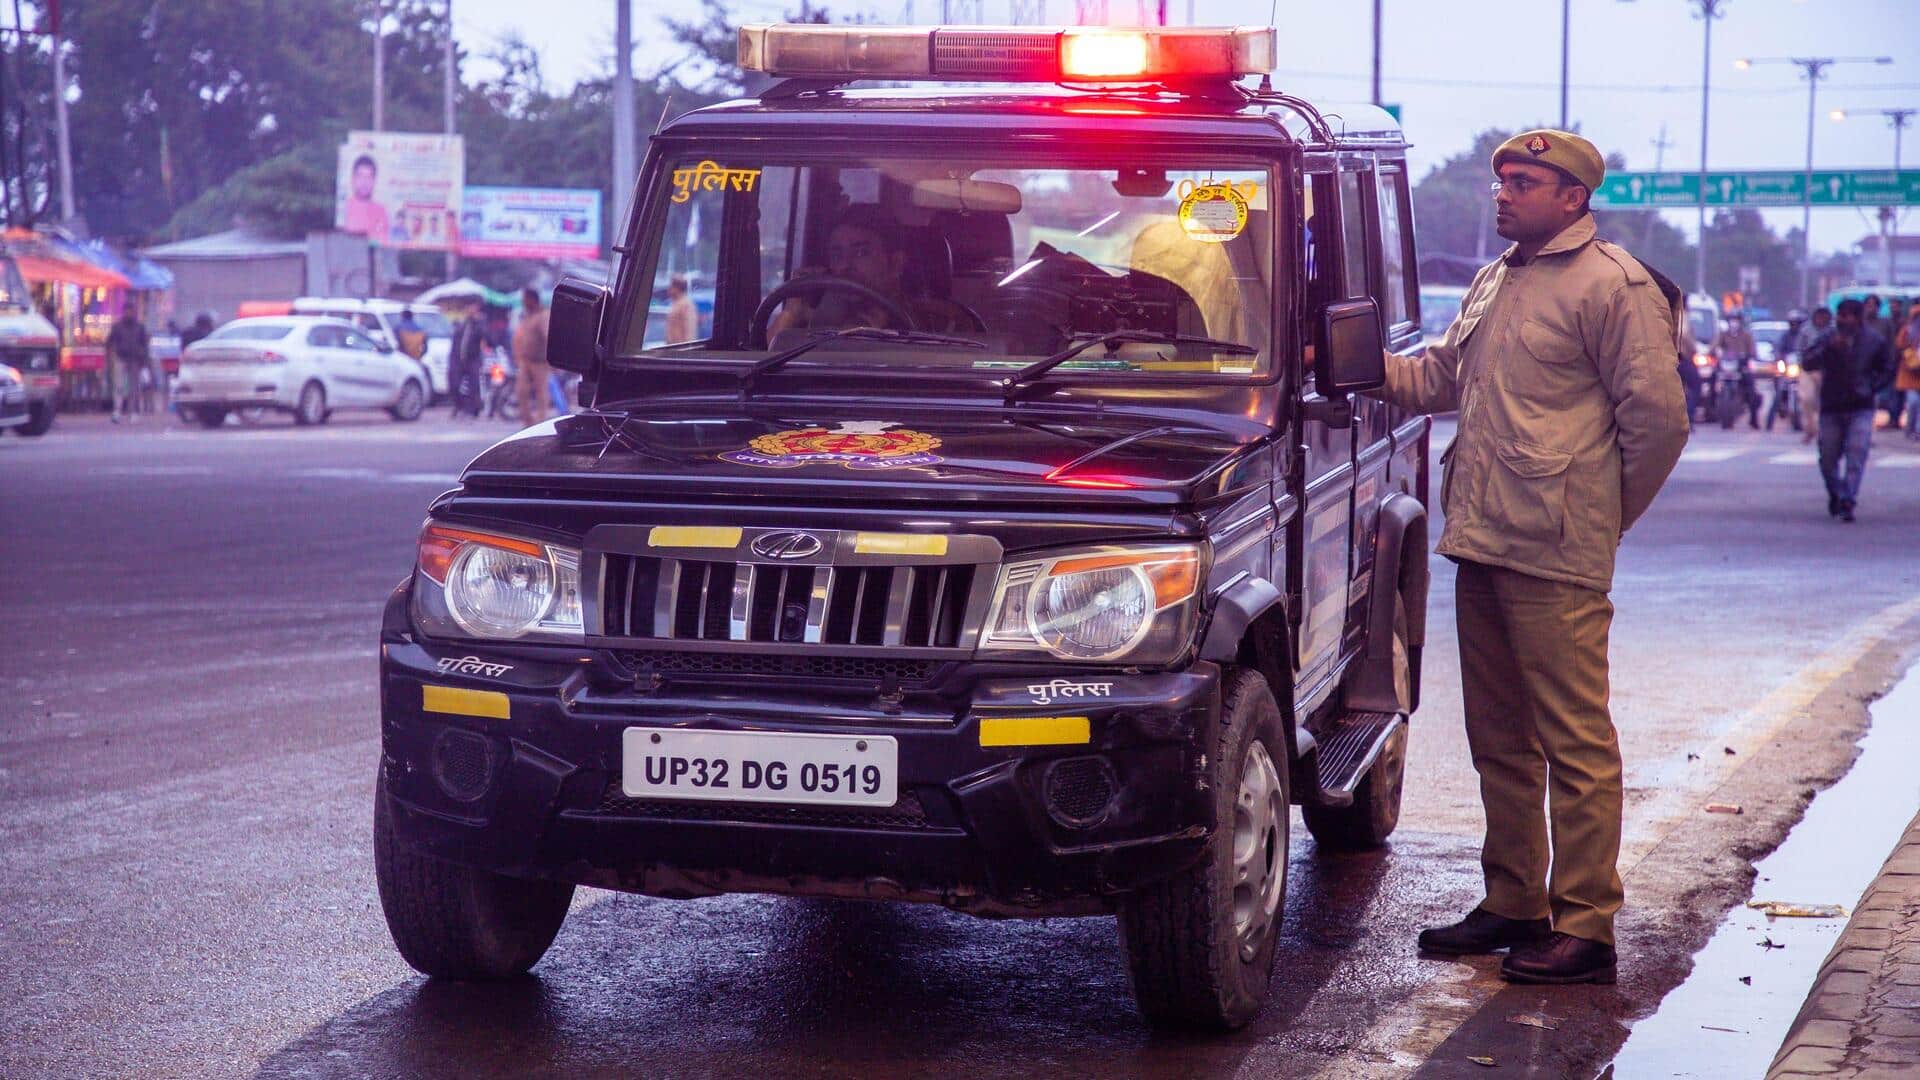 लखनऊ: कार से स्टंट करने पर कटा 26,000 रुपये का चालान, पुलिस ने हिरासत में लिया